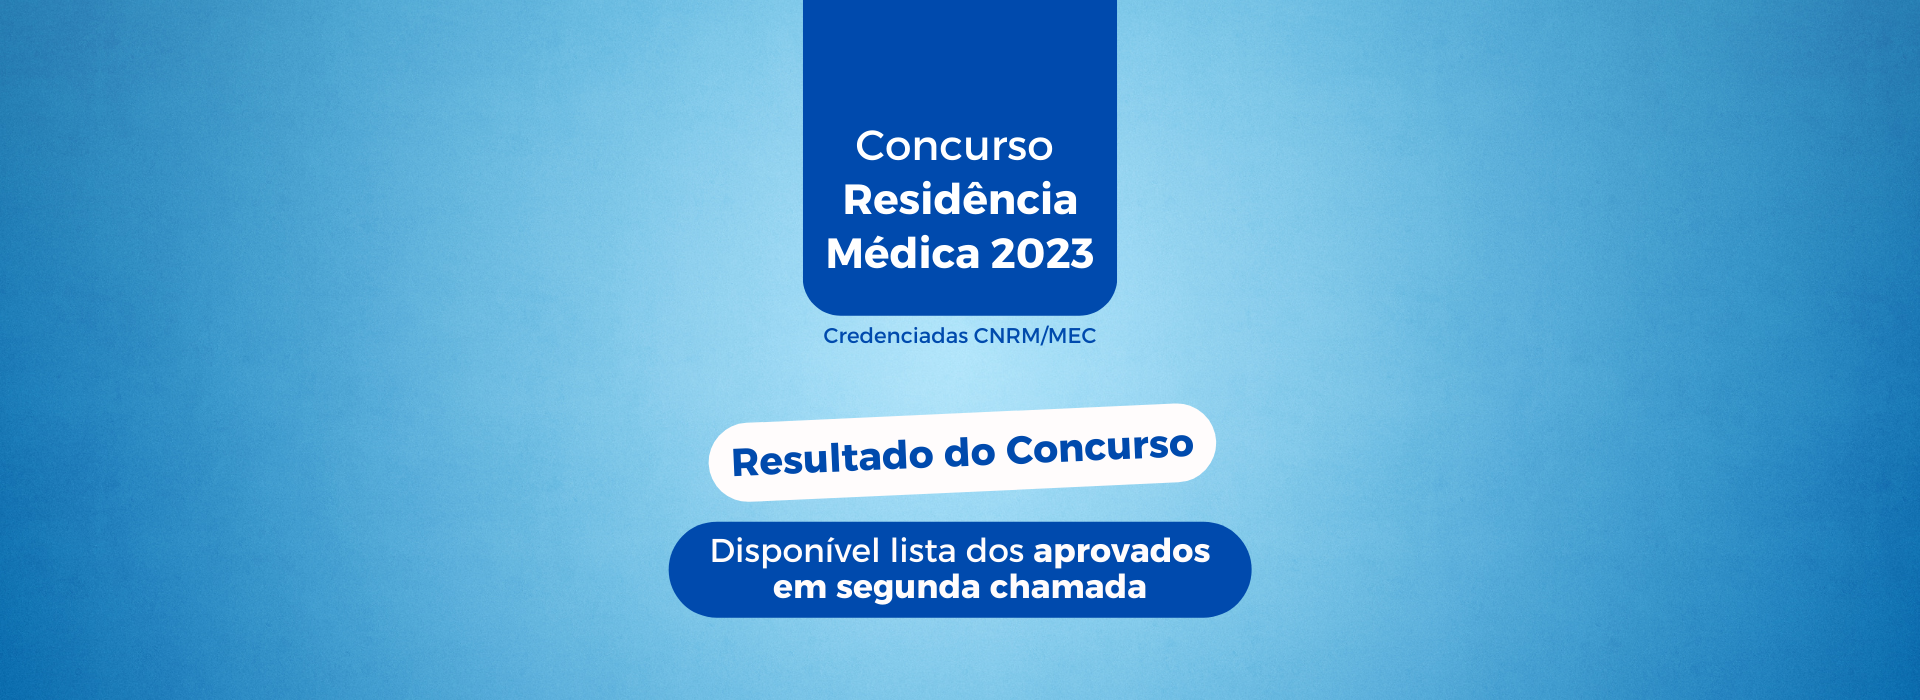 Resultado do Concurso – Residência Médica 2023